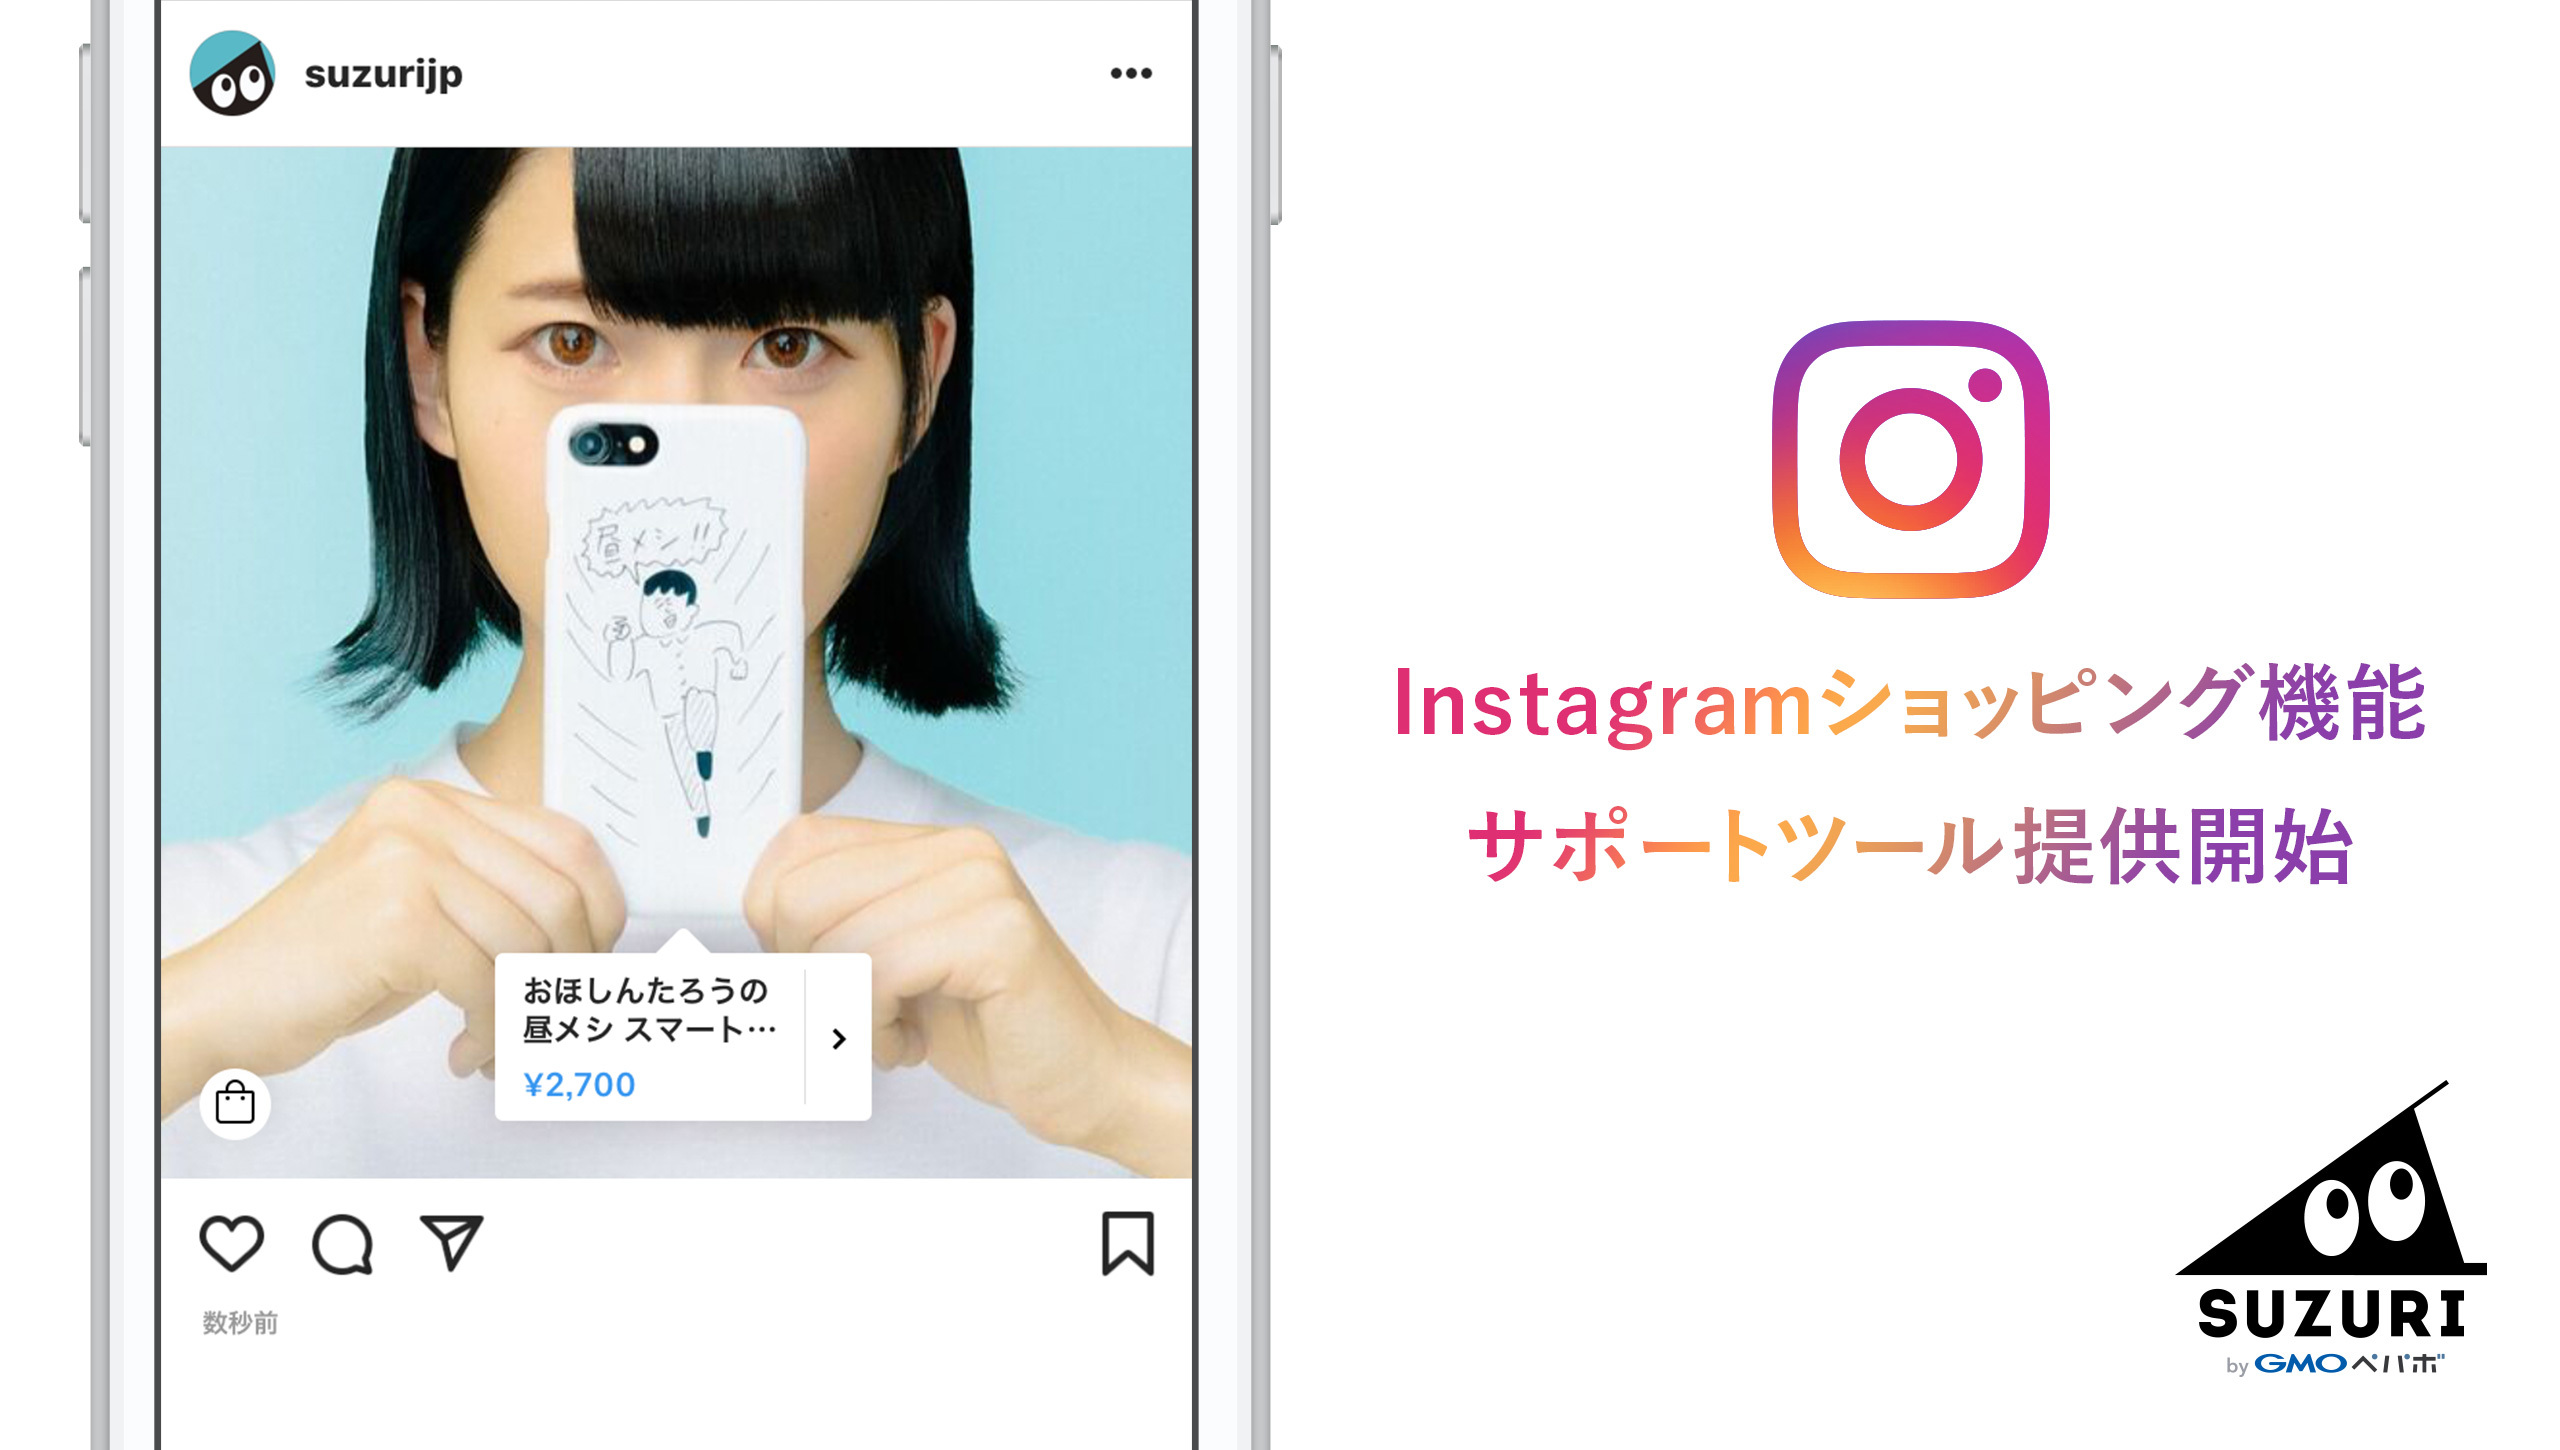 オリジナルグッズ作成 販売サービス Suzuri Instagram ショッピング機能 に対応 Gmoインターネット株式会社